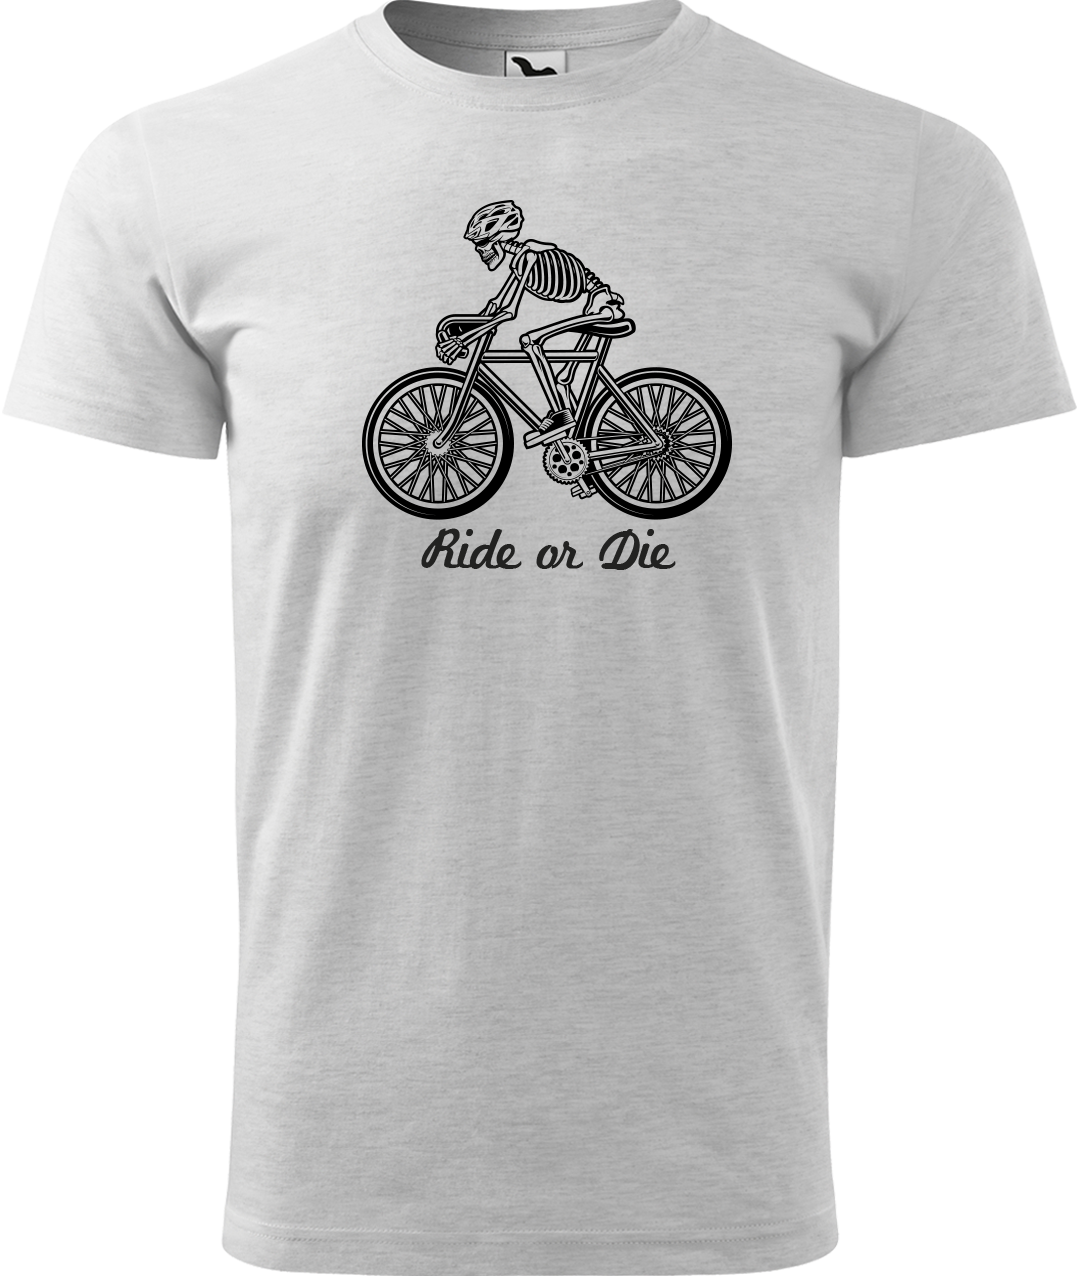 Pánské tričko pro cyklistu - Ride or Die Velikost: XL, Barva: Světle šedý melír (03)